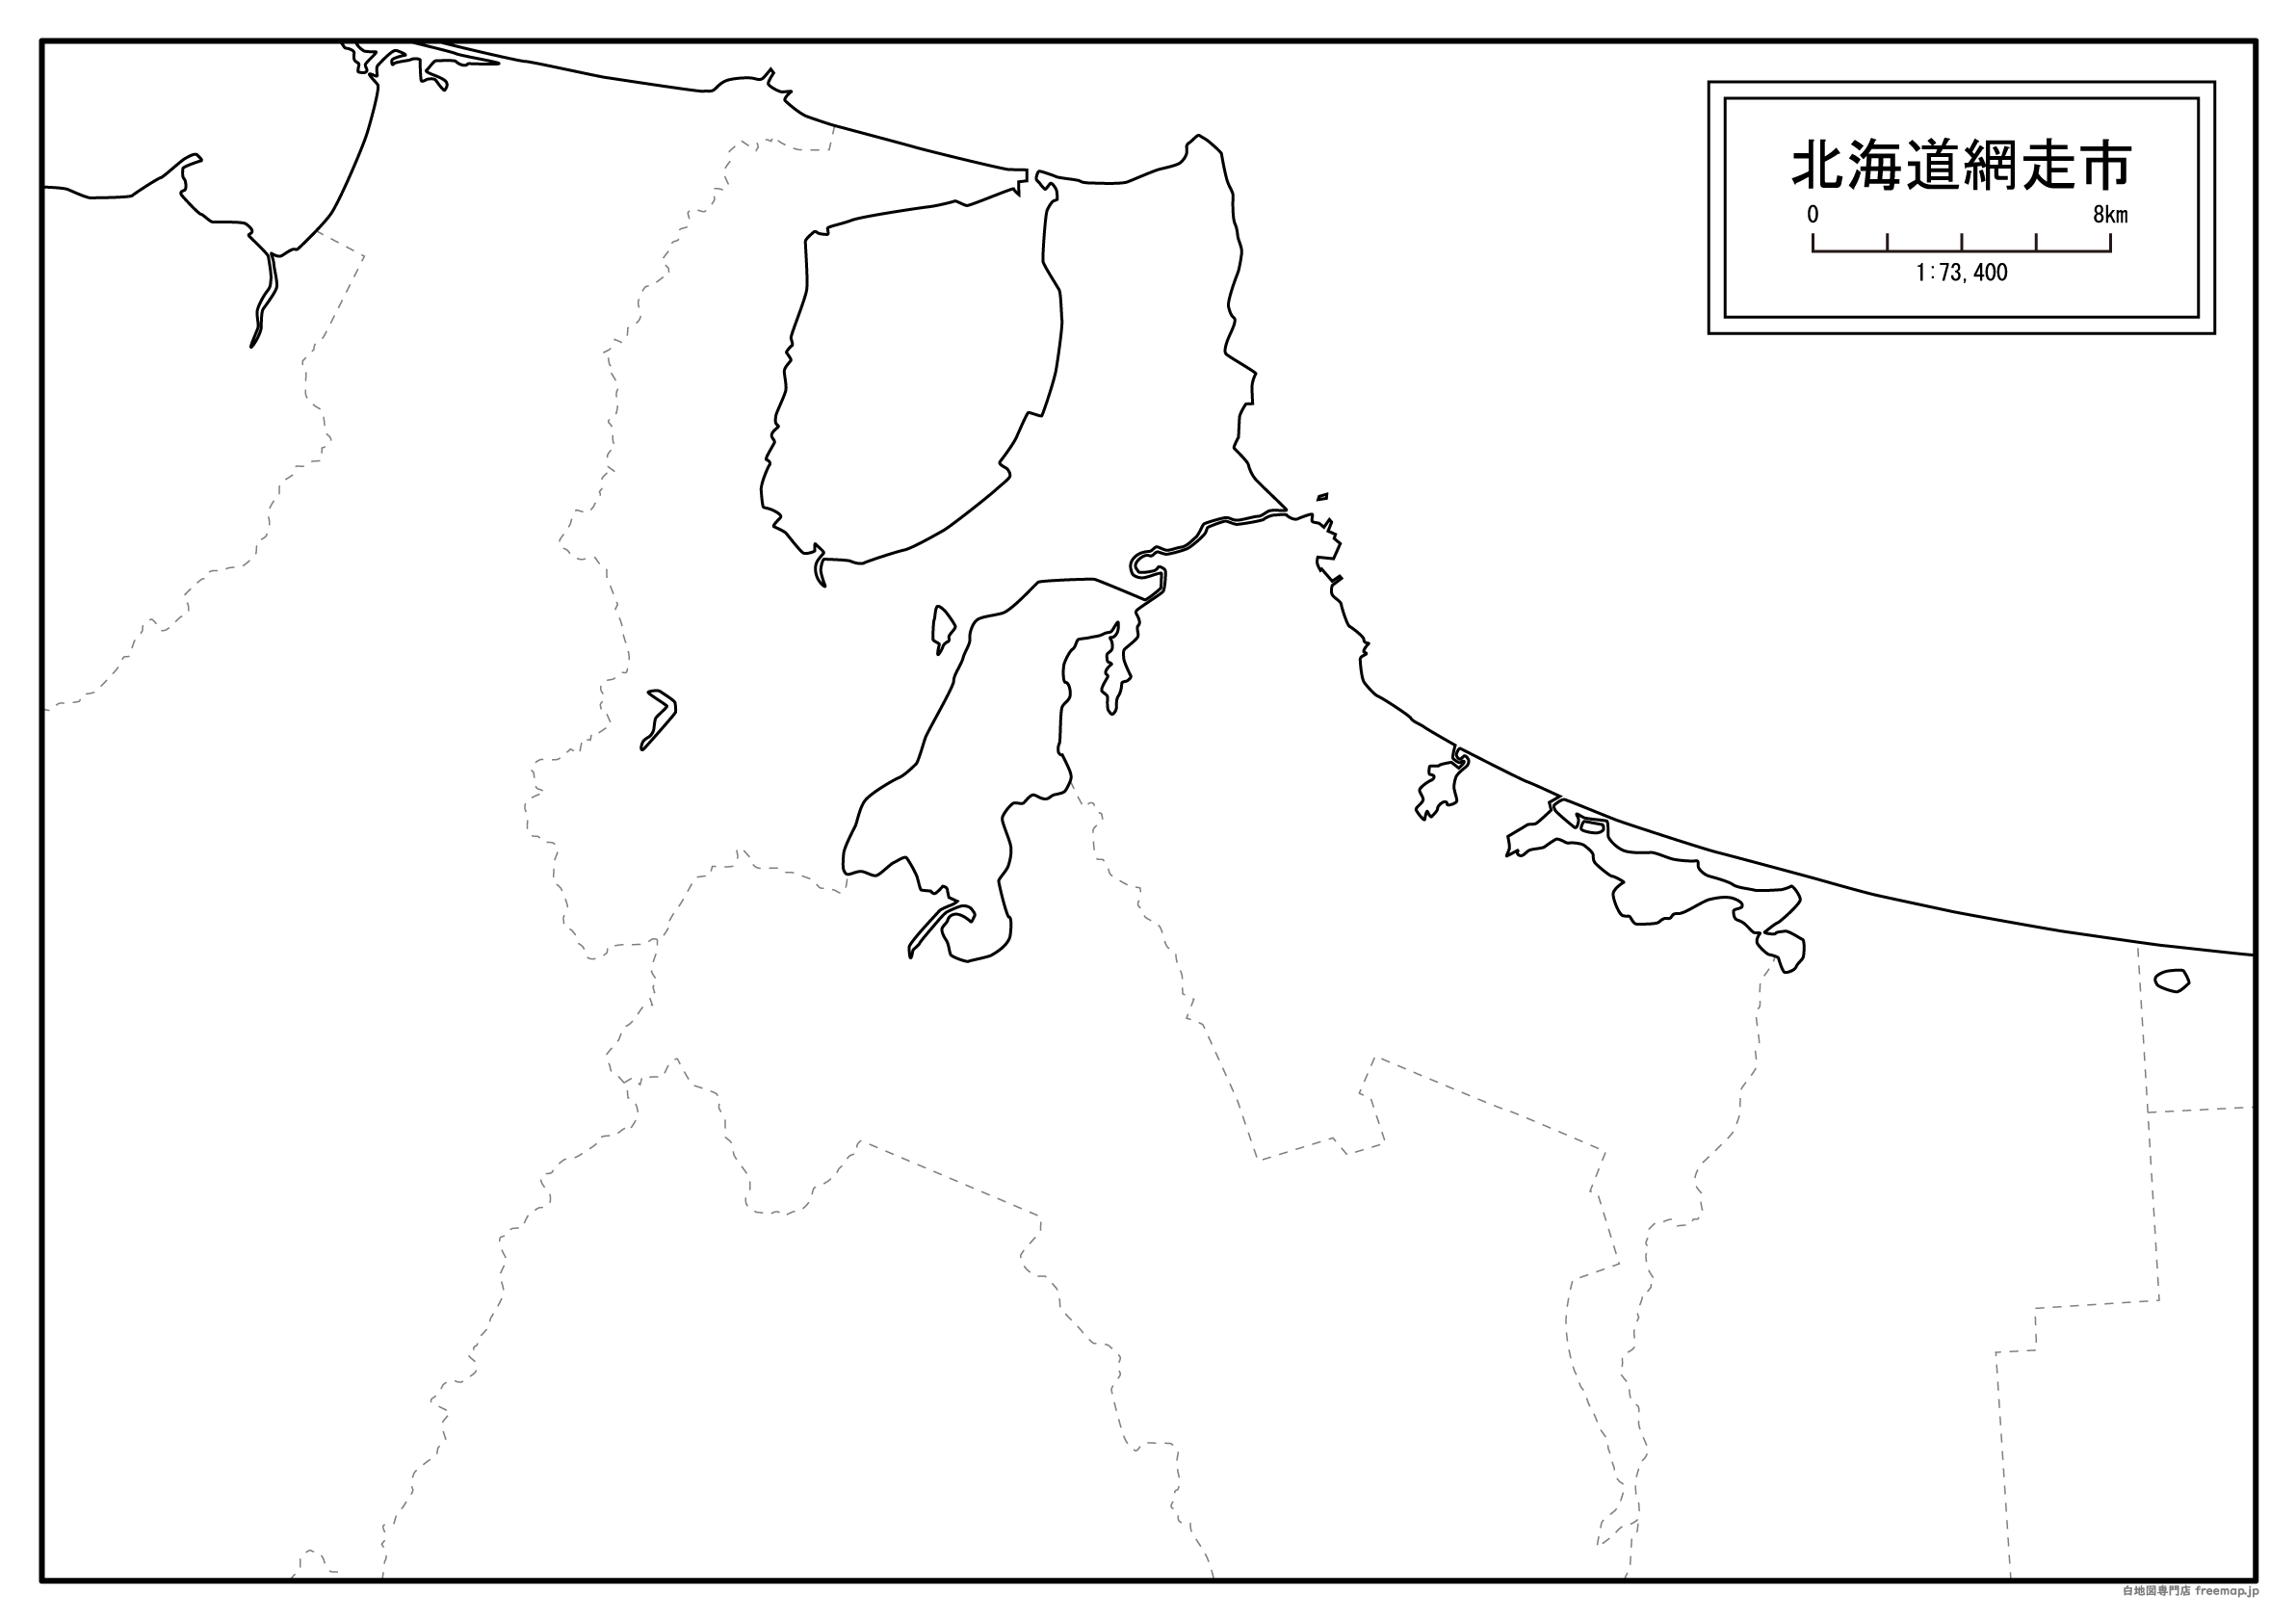 網走市の白地図を無料ダウンロードdownload abashiri's map for free of charge.